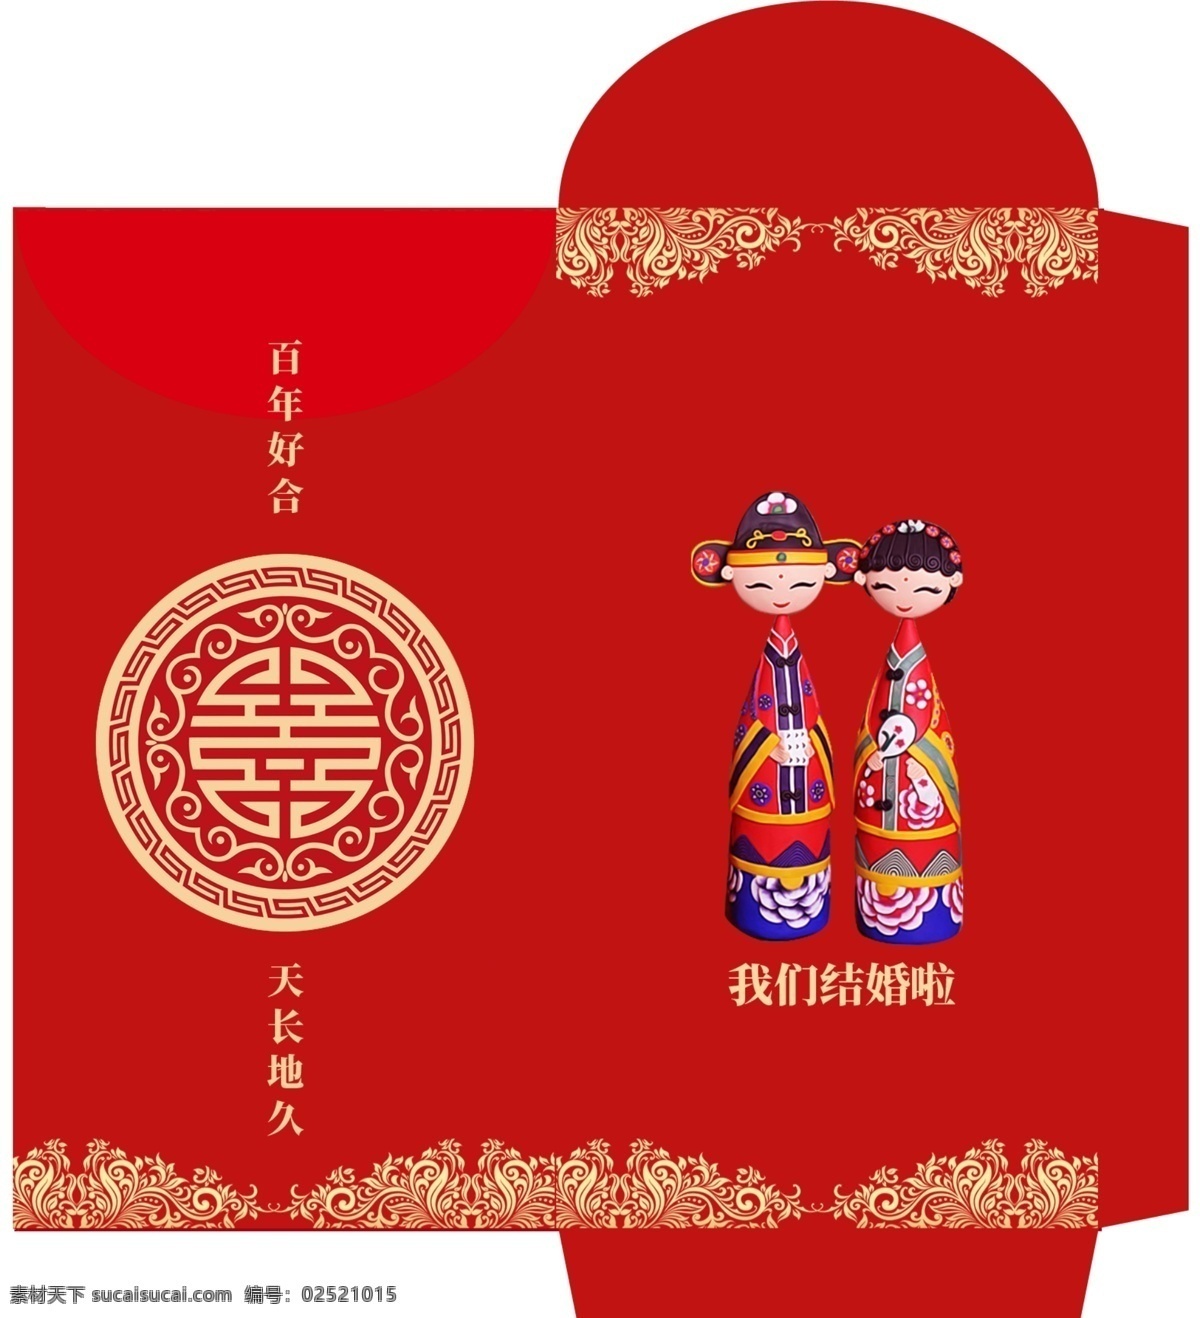 2018 红色 创意 红包 模版 psd素材 创意设计 免费素材 平面素材 平面模板 红包模板 红包设计 模版设计 红色设计 创意红包 创意模版